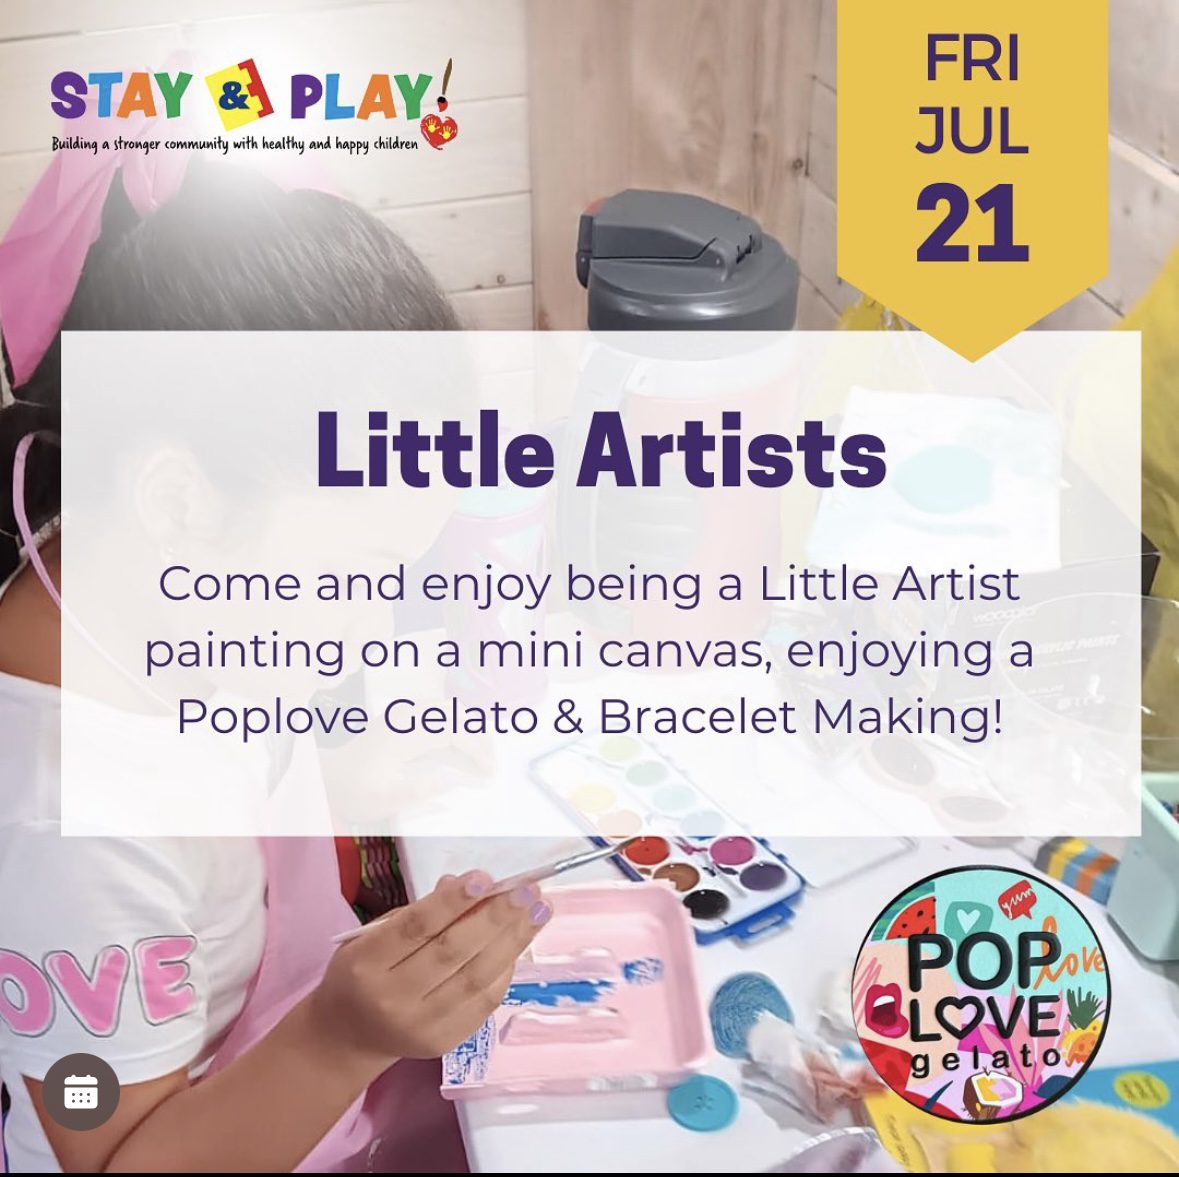 Little Artists Event